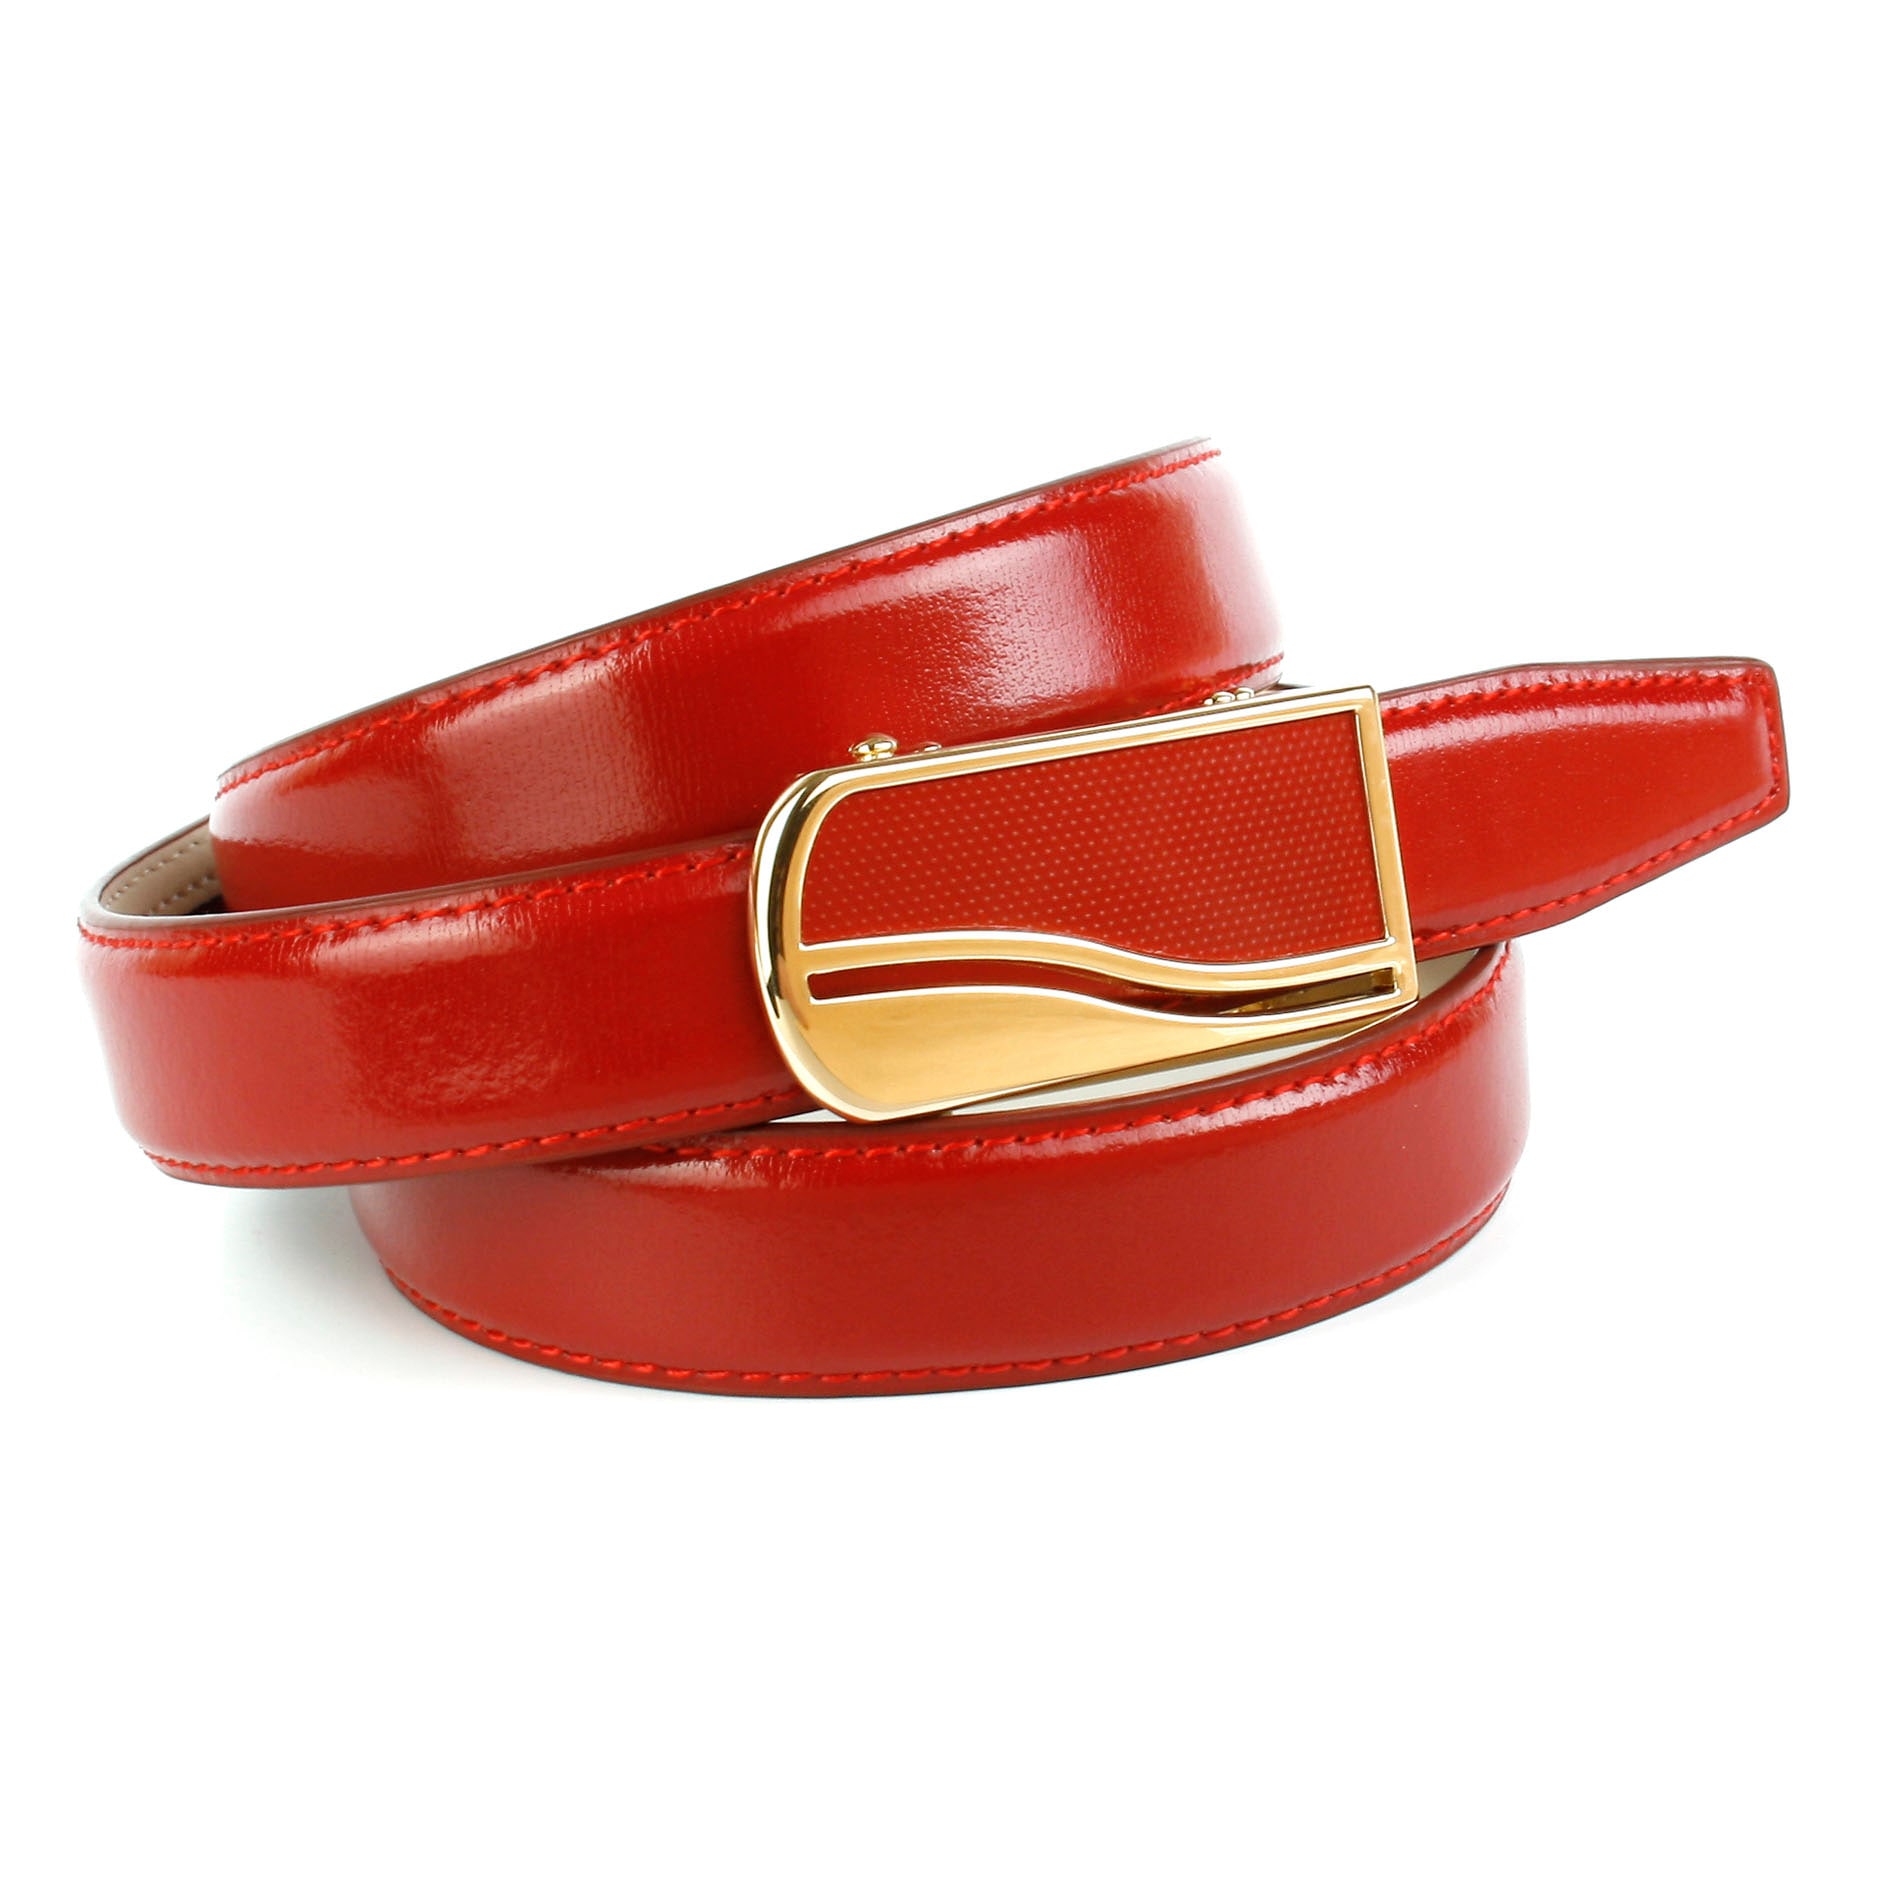 Ledergürtel, 2,4 cm femininer Ledergürtel in rot